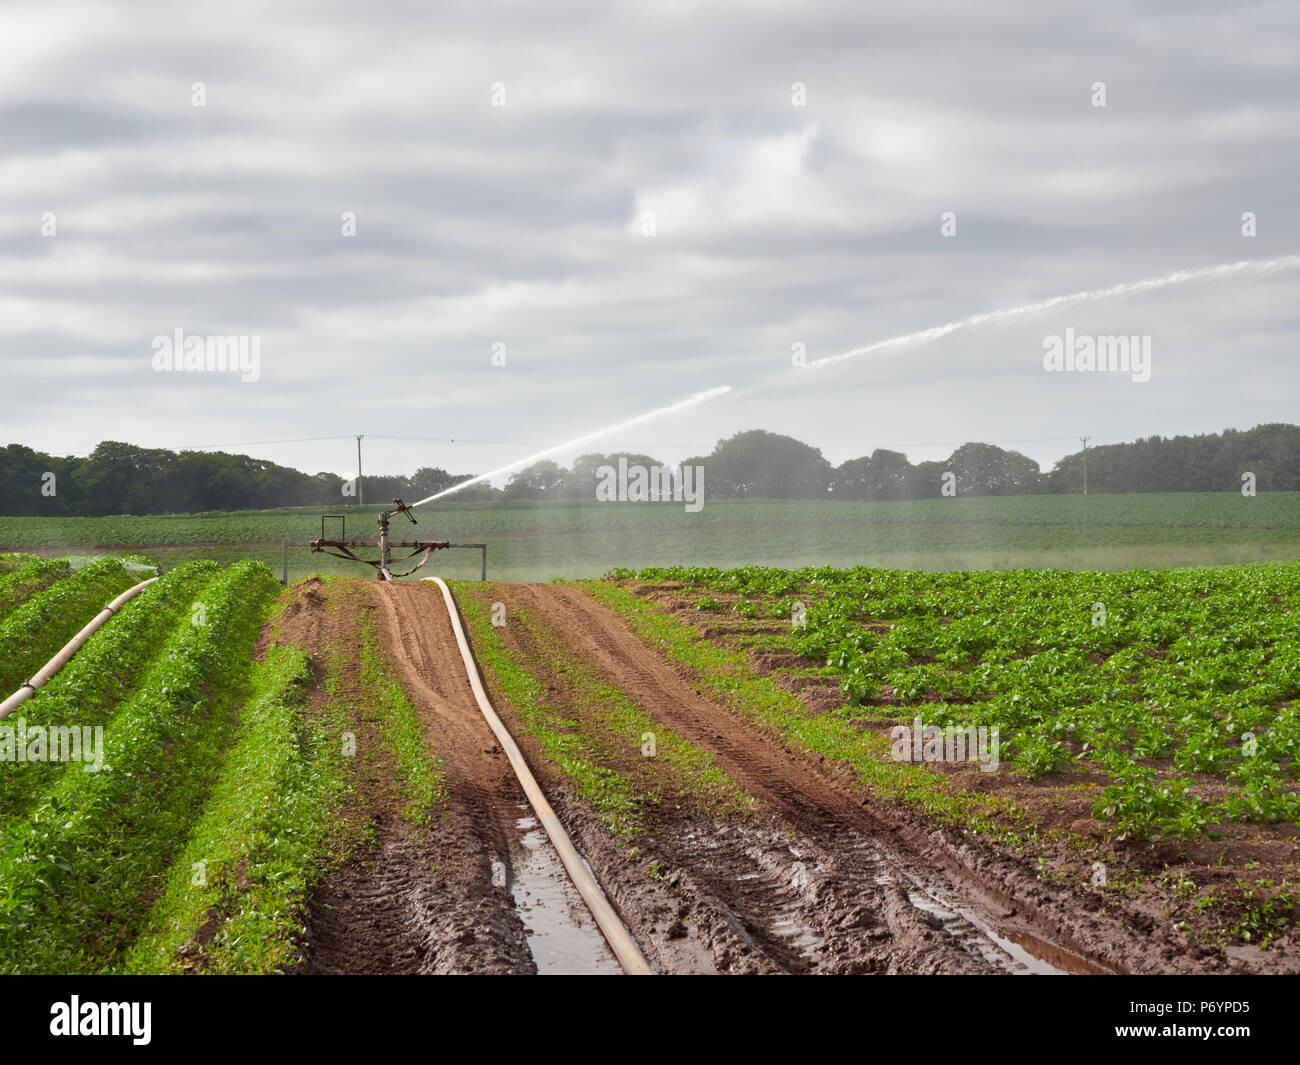 Un Wrights Rainmaker Agricolo di cannoni ad acqua acqua tiro fuori a destra oltre i solchi di piantate le piante di patata in Colliston, Angus, Scozia. Foto Stock